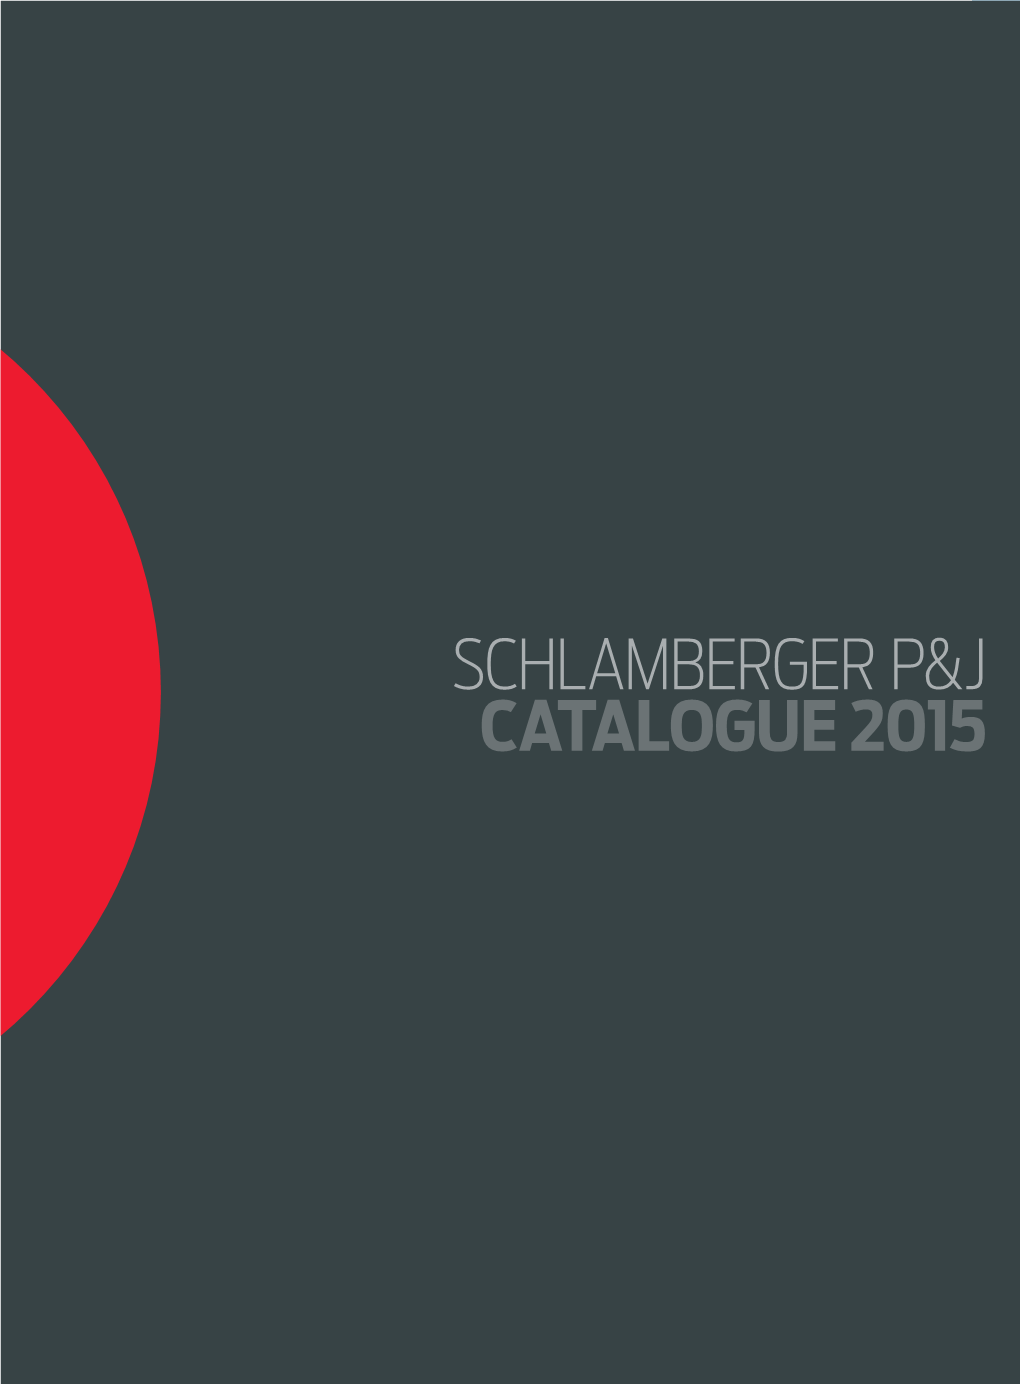 Schlamberger P&J Catalogue 2015